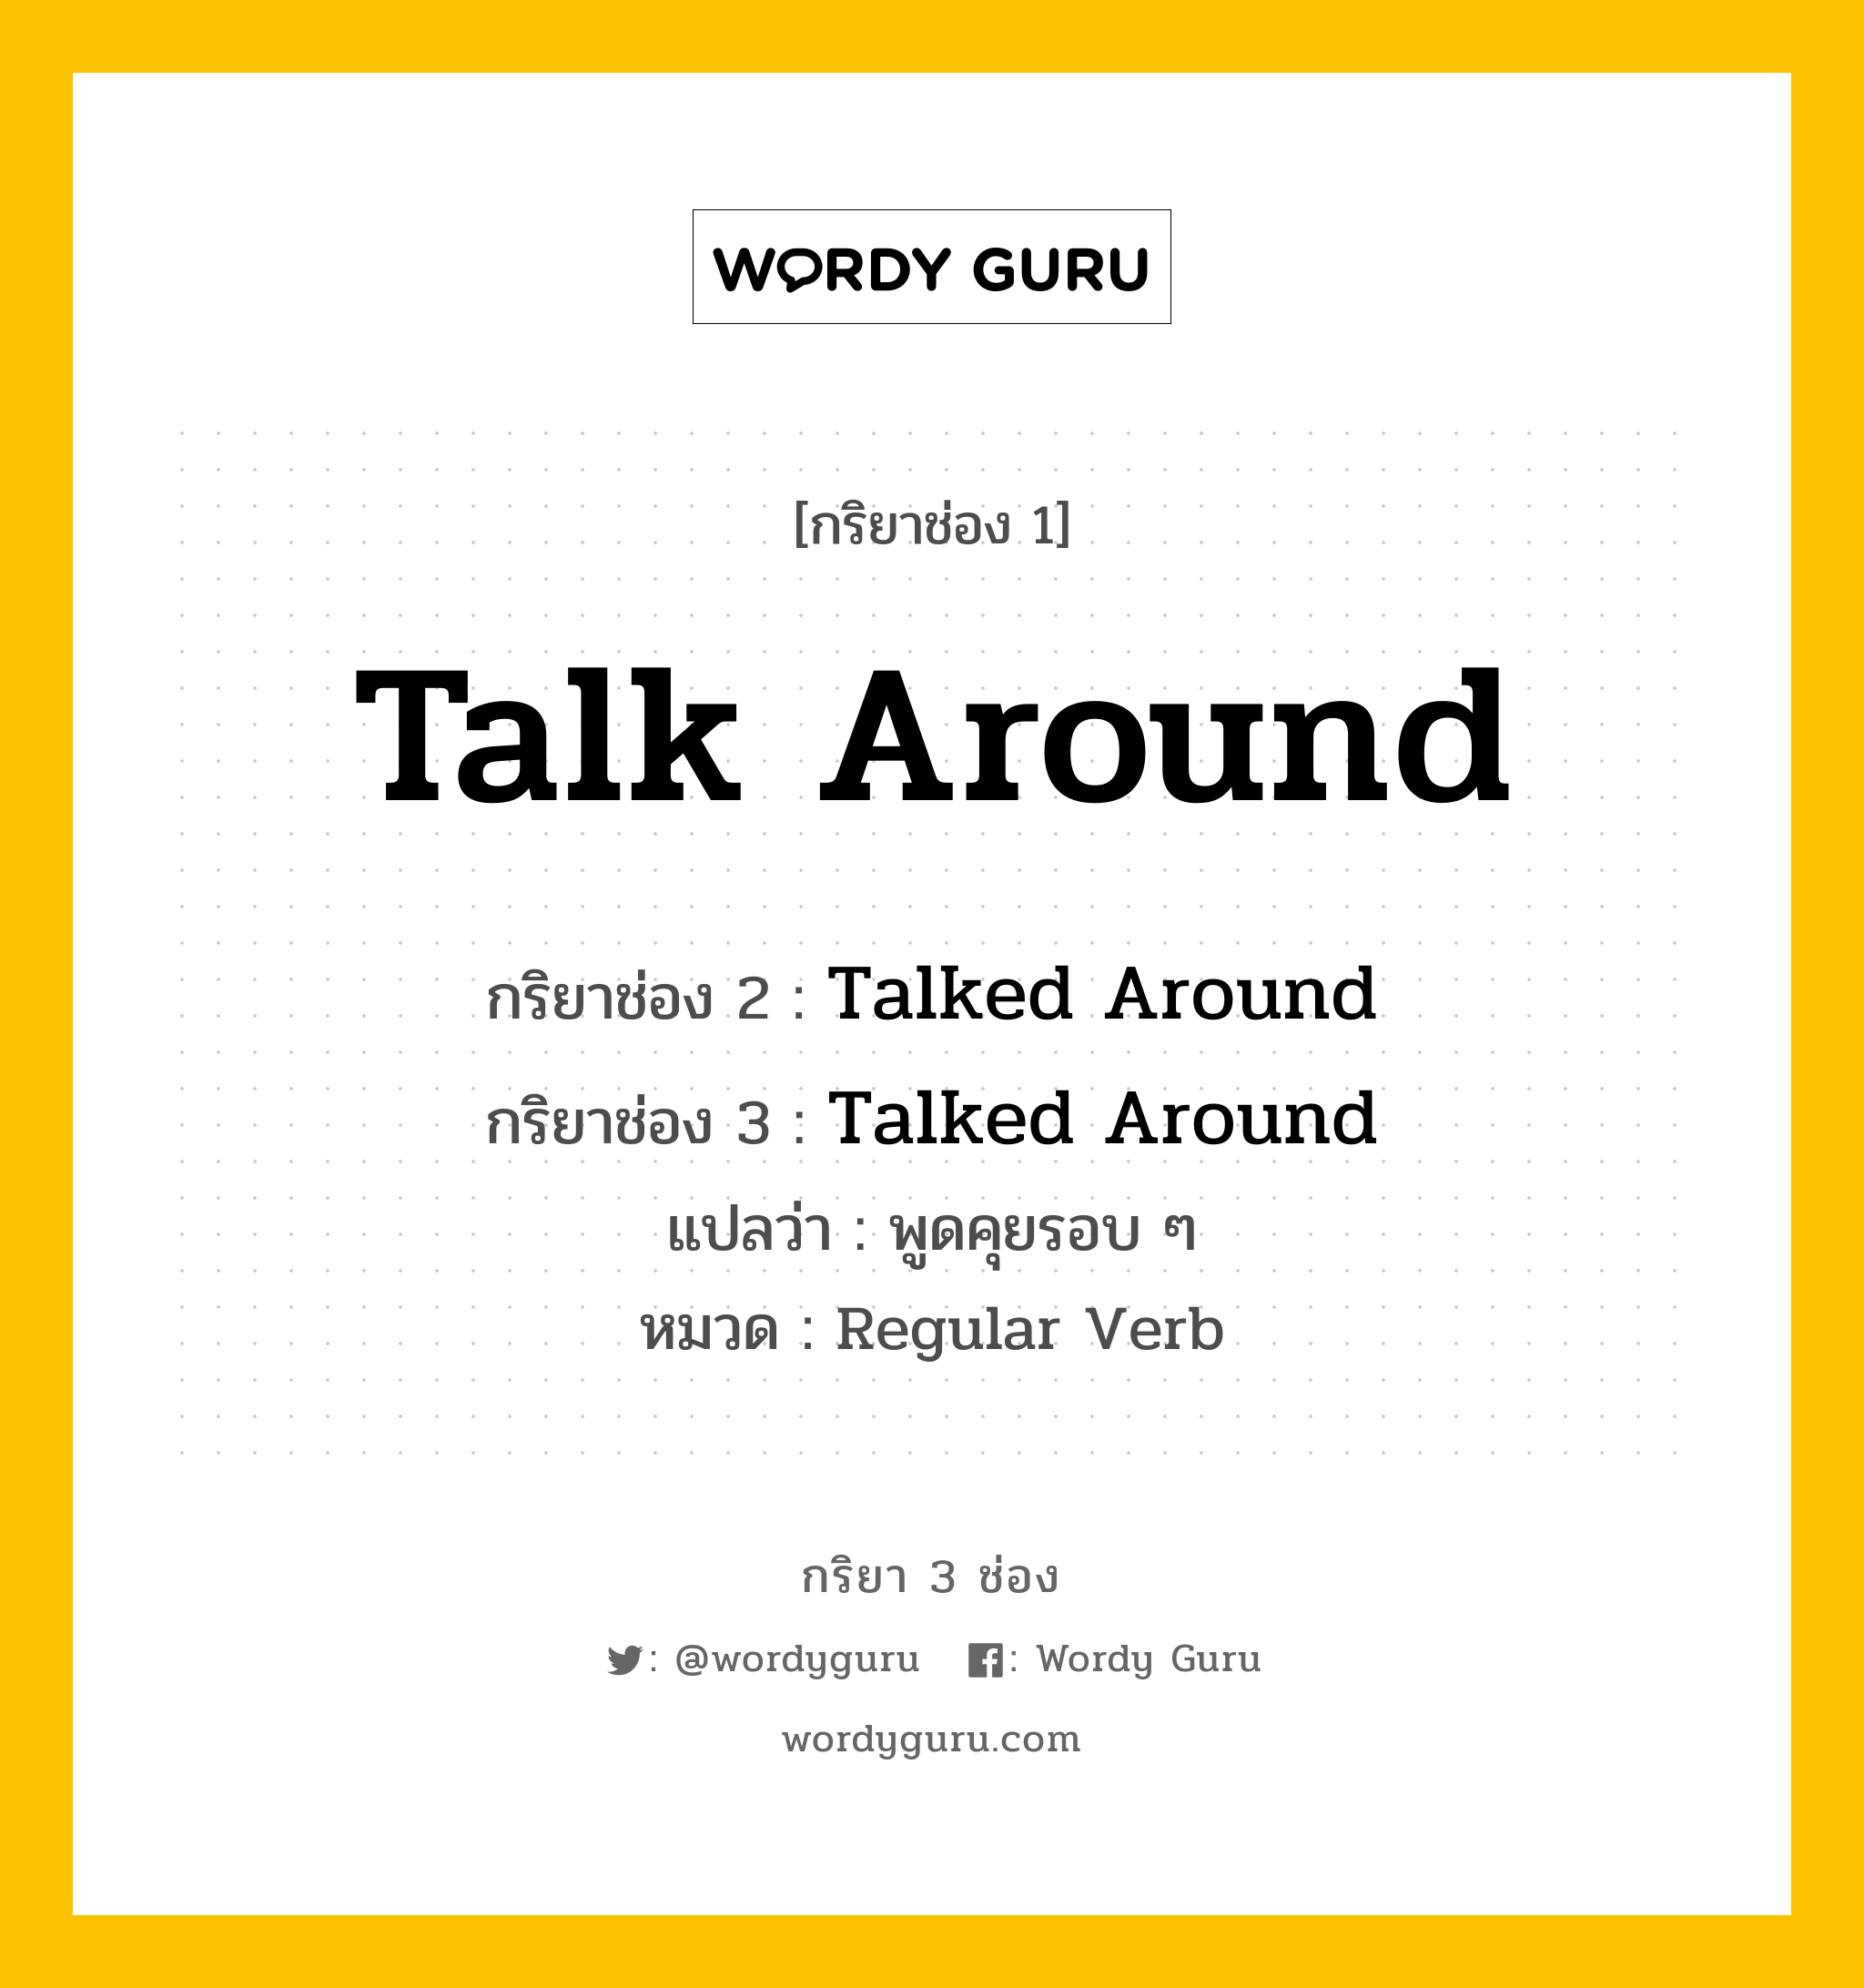 กริยา 3 ช่อง: Talk Around ช่อง 2 Talk Around ช่อง 3 คืออะไร, กริยาช่อง 1 Talk Around กริยาช่อง 2 Talked Around กริยาช่อง 3 Talked Around แปลว่า พูดคุยรอบ ๆ หมวด Regular Verb หมวด Regular Verb